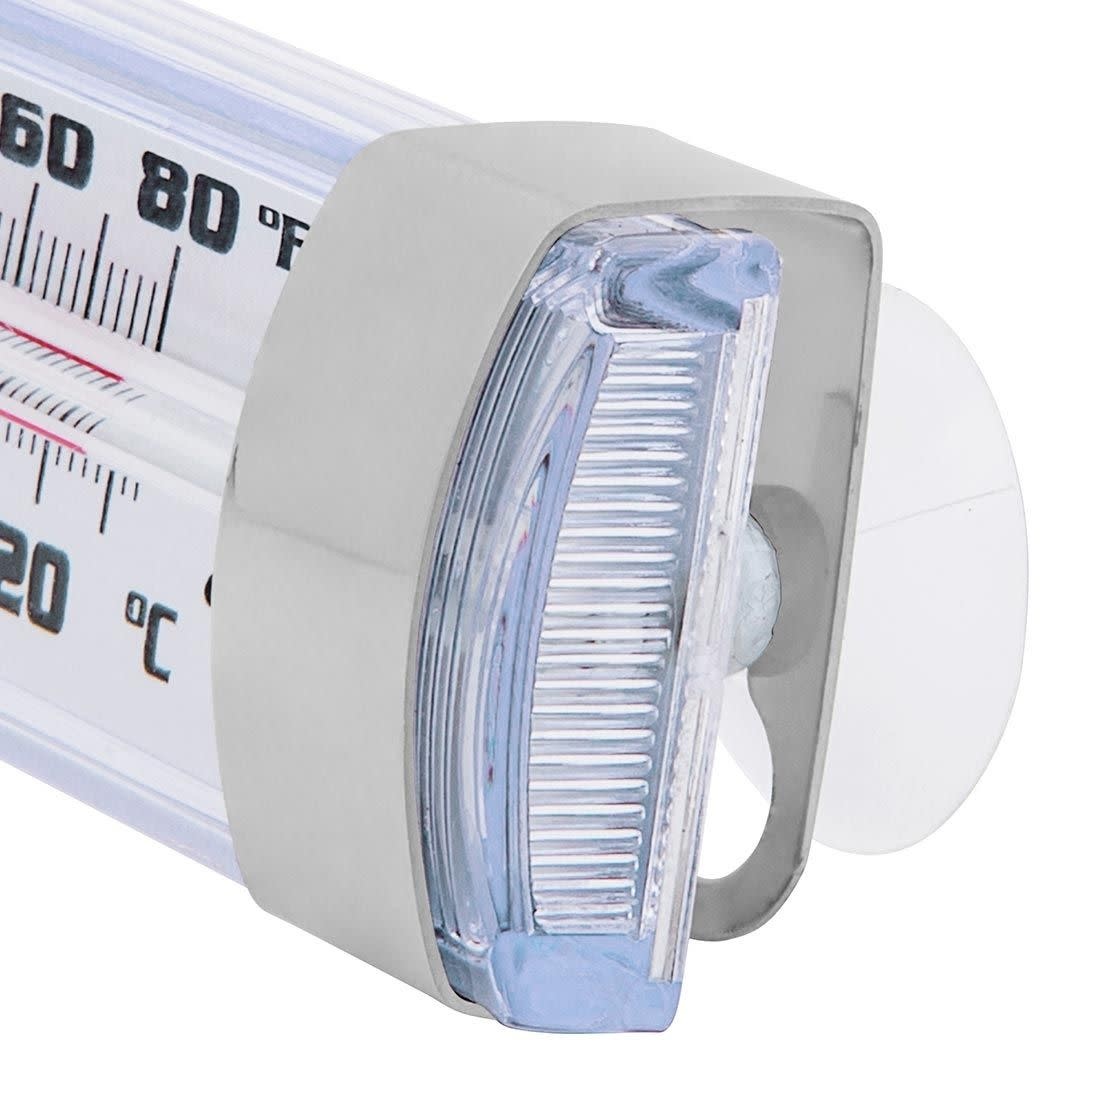 Thermomètre numérique pour Réfrigérateur/congélateur - Escali